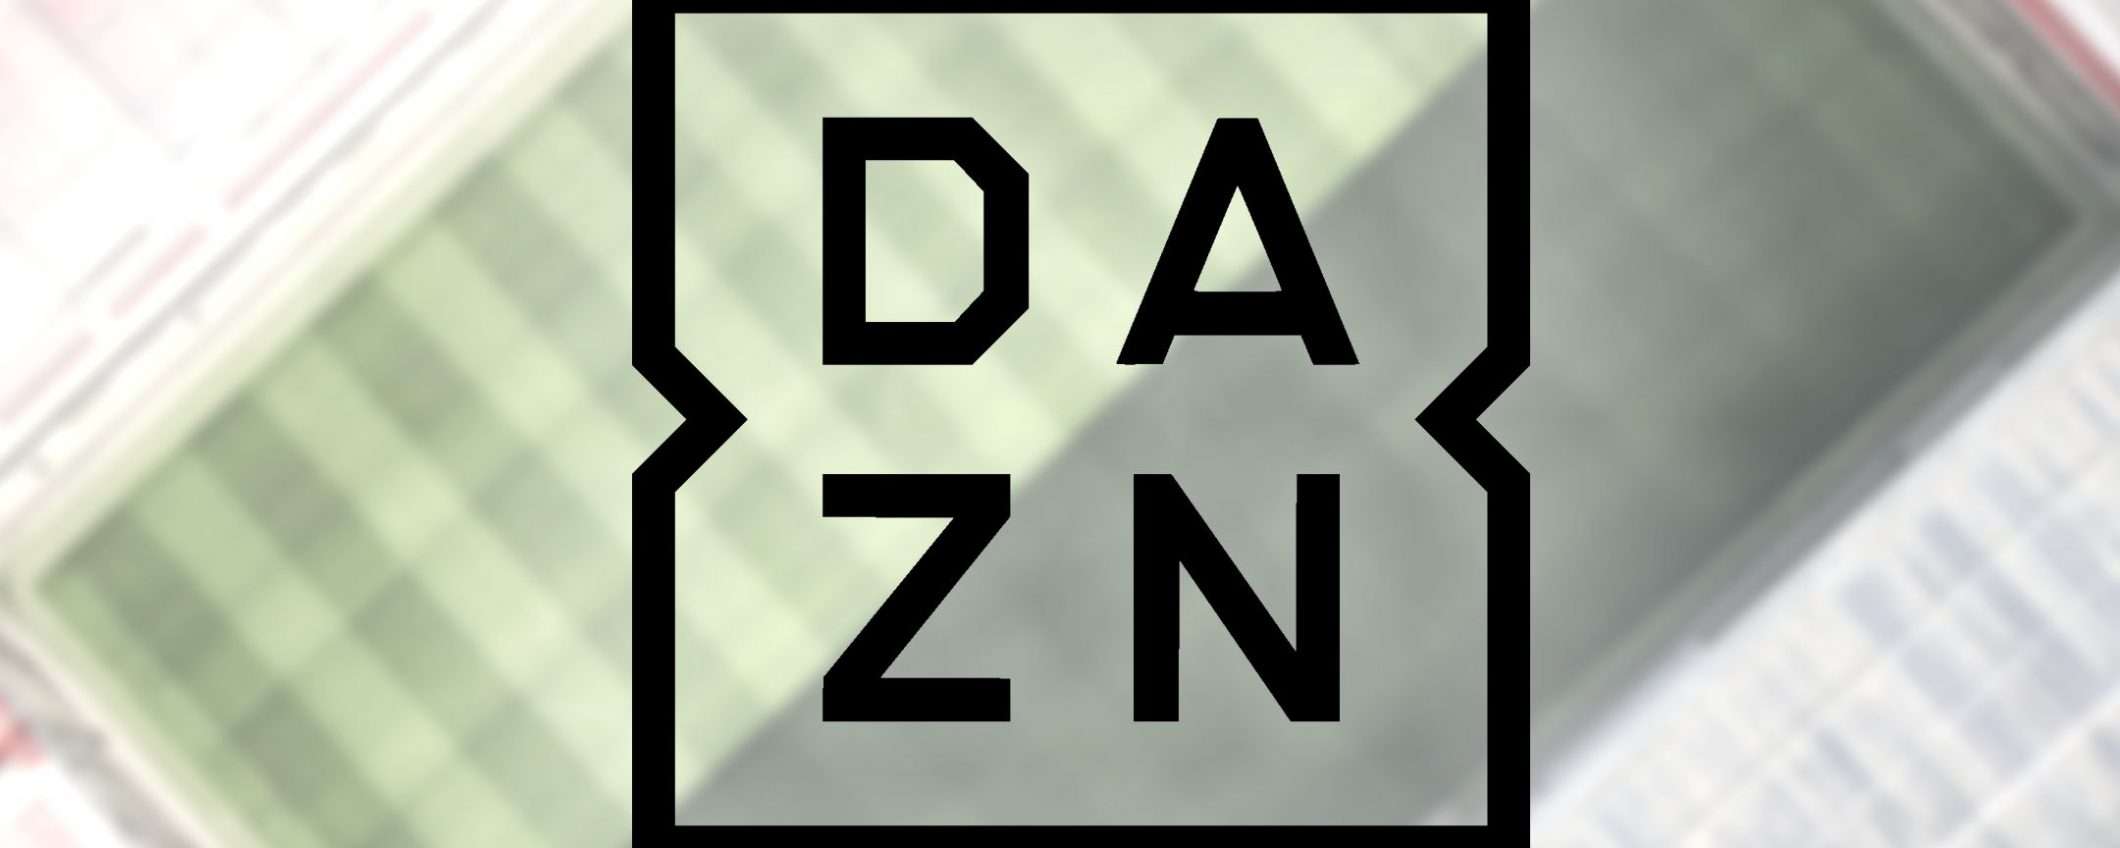 DAZN: streaming in full HD da novembre?